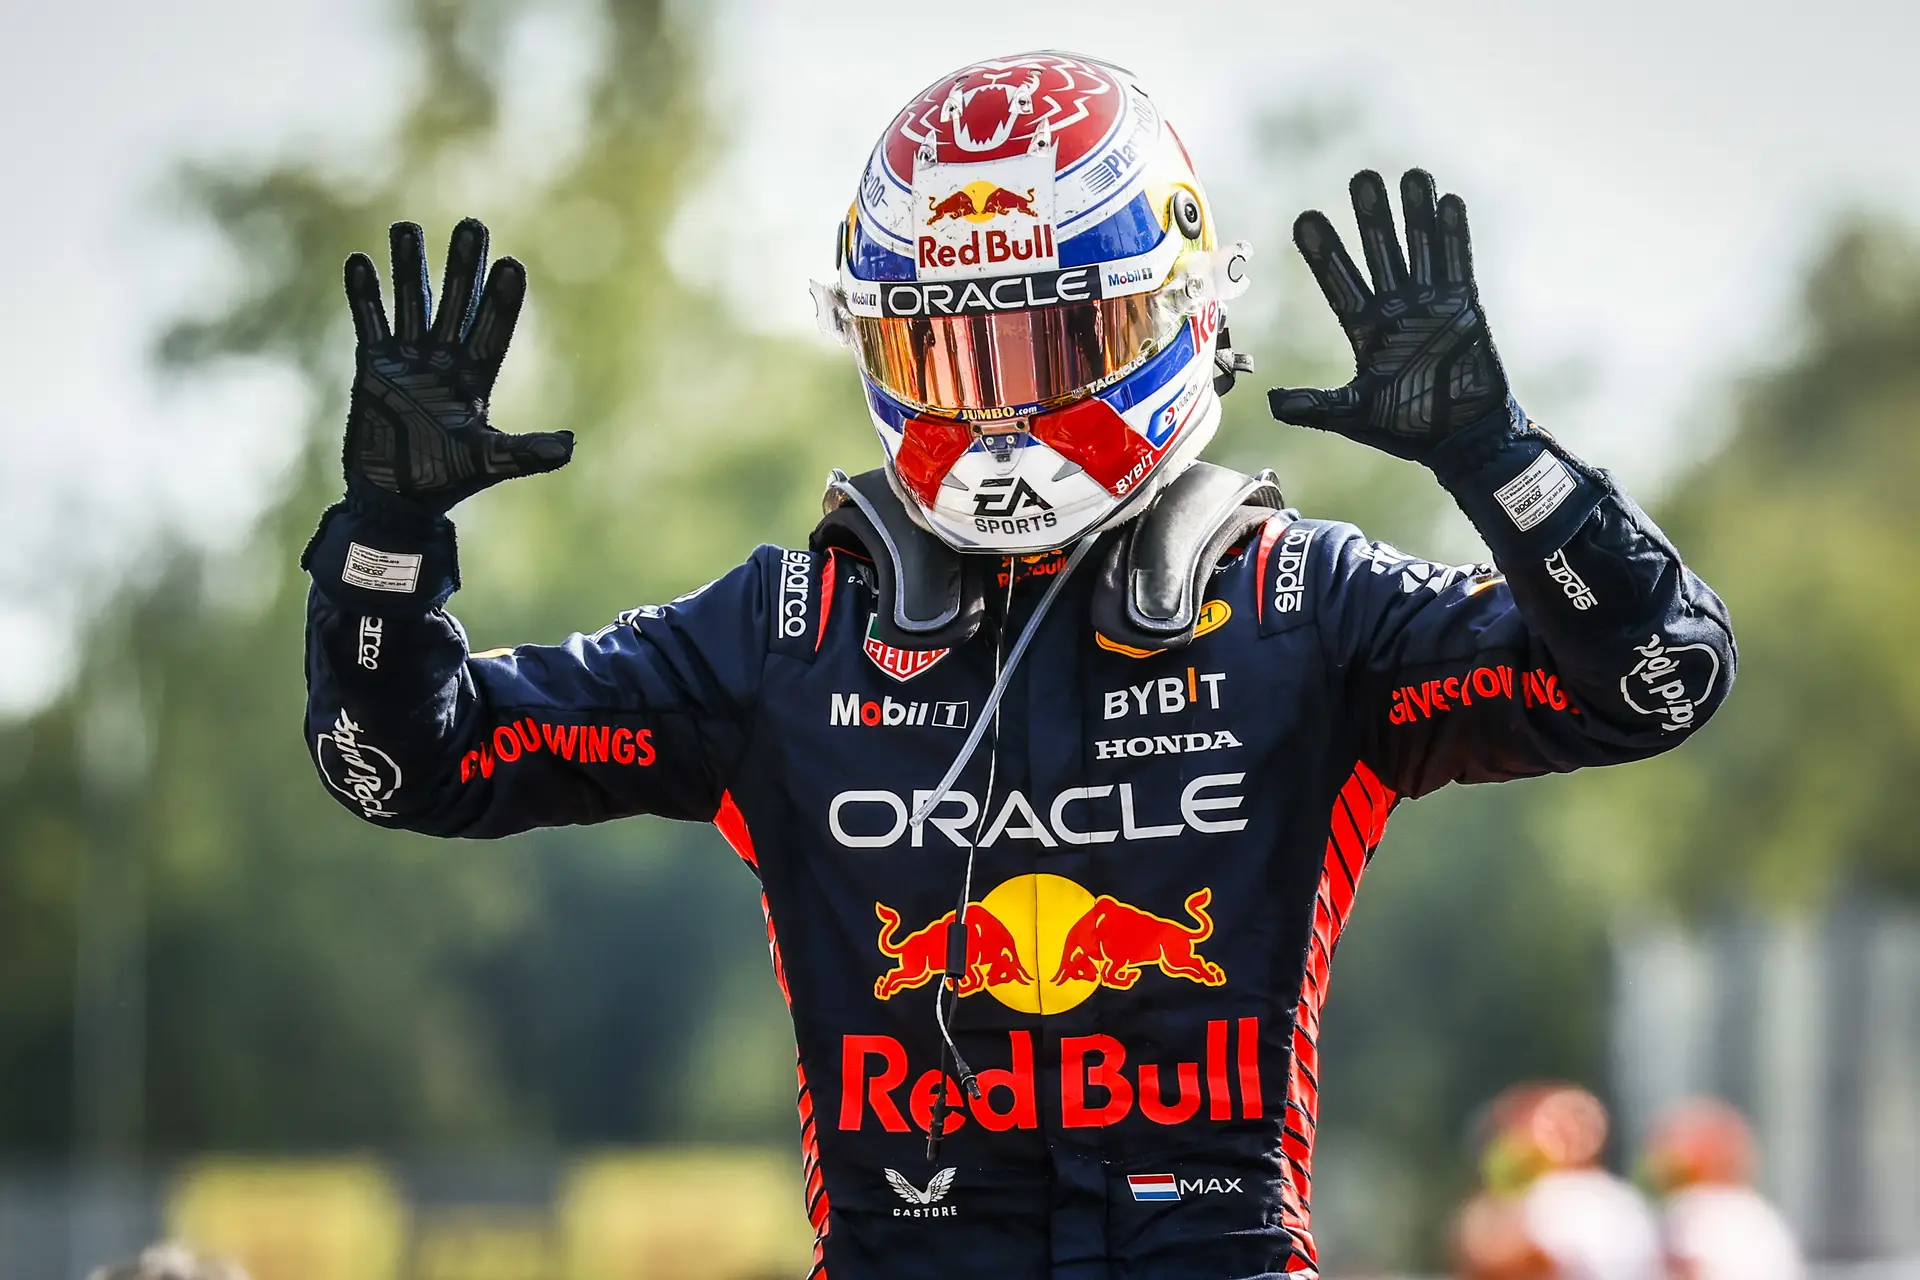 Sainz reafirma força e lidera TL3 em Singapura. Verstappen é 4º